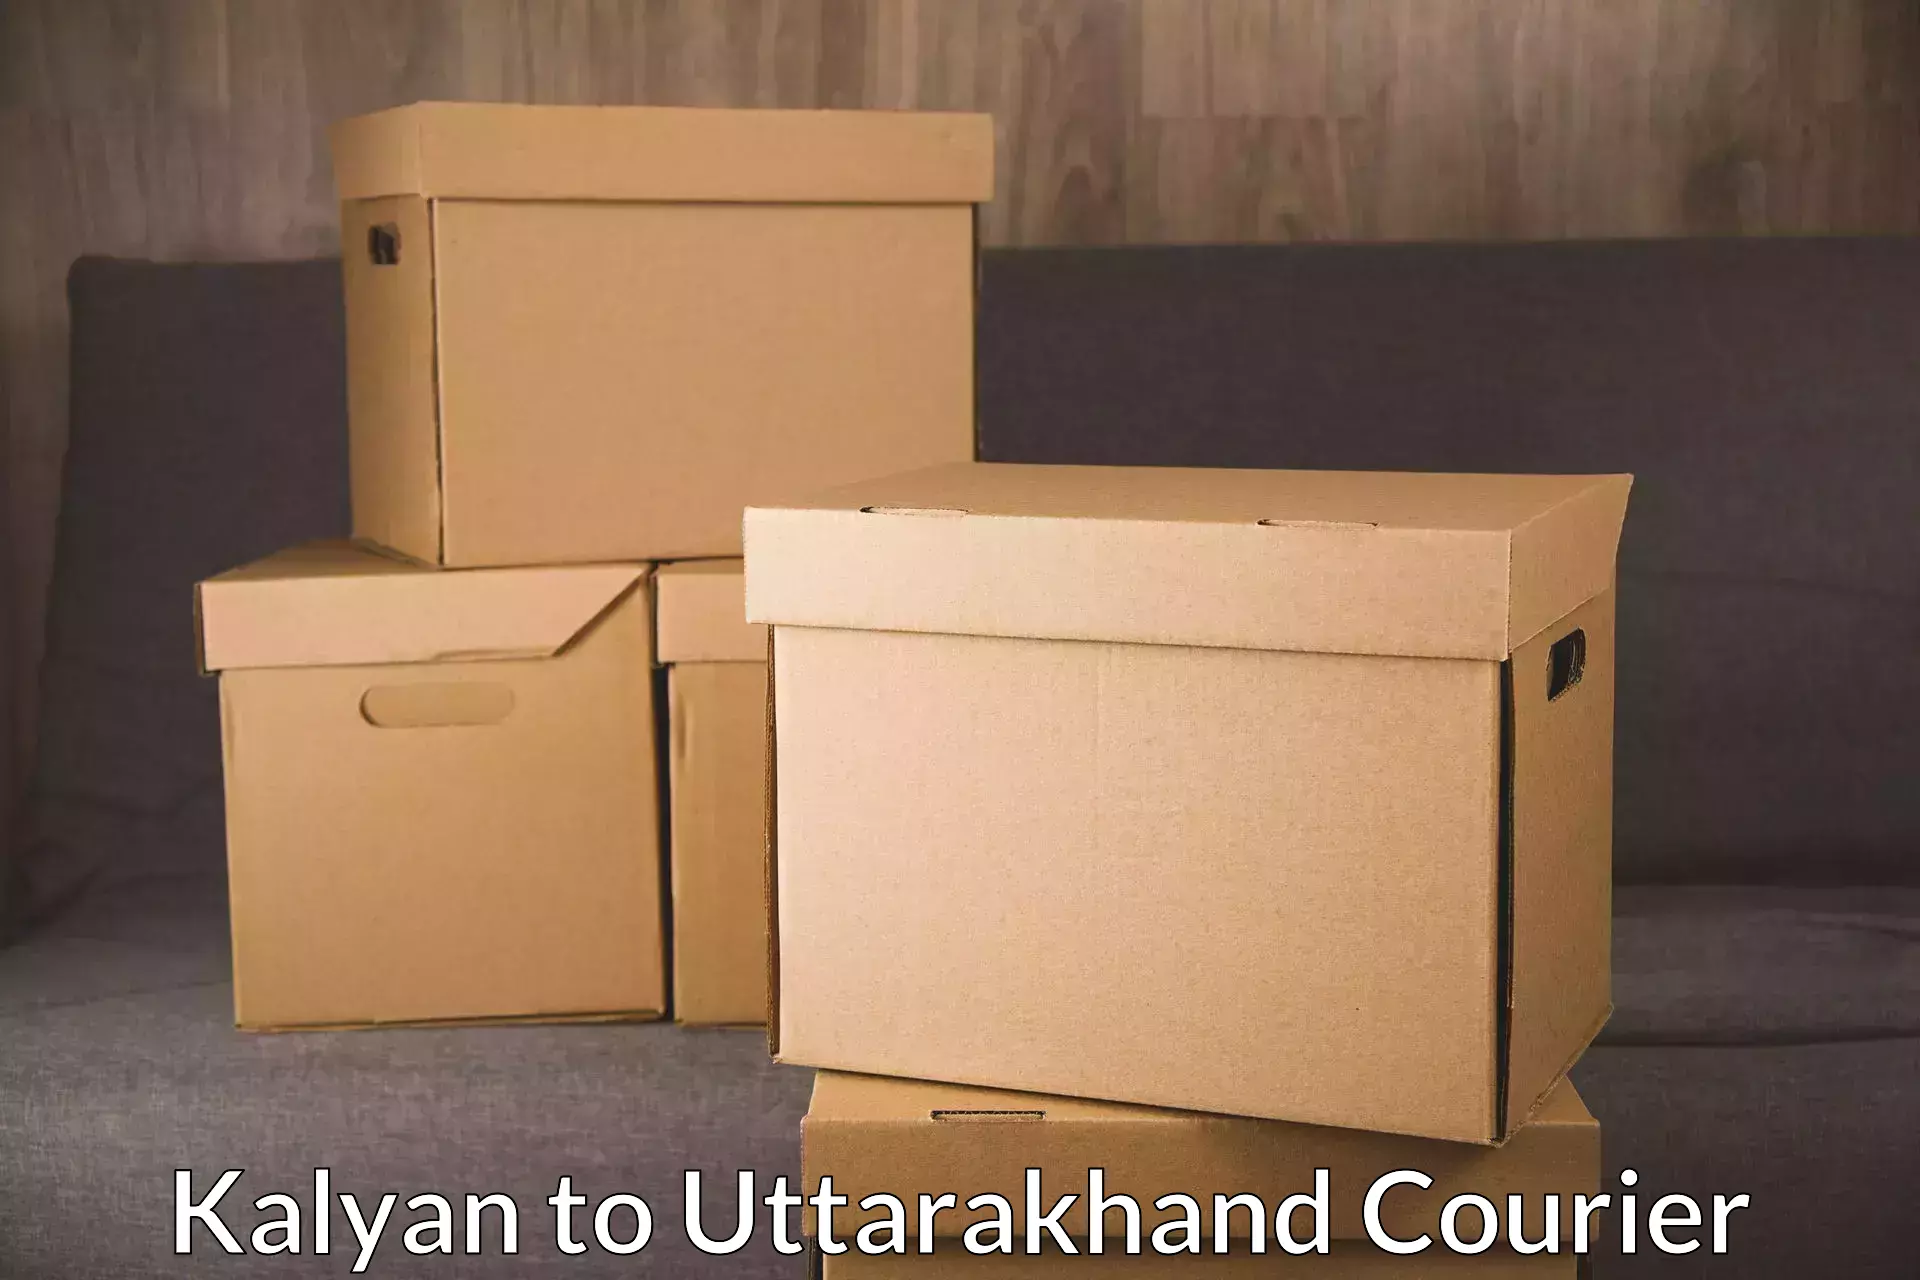 Customizable shipping options Kalyan to Gopeshwar